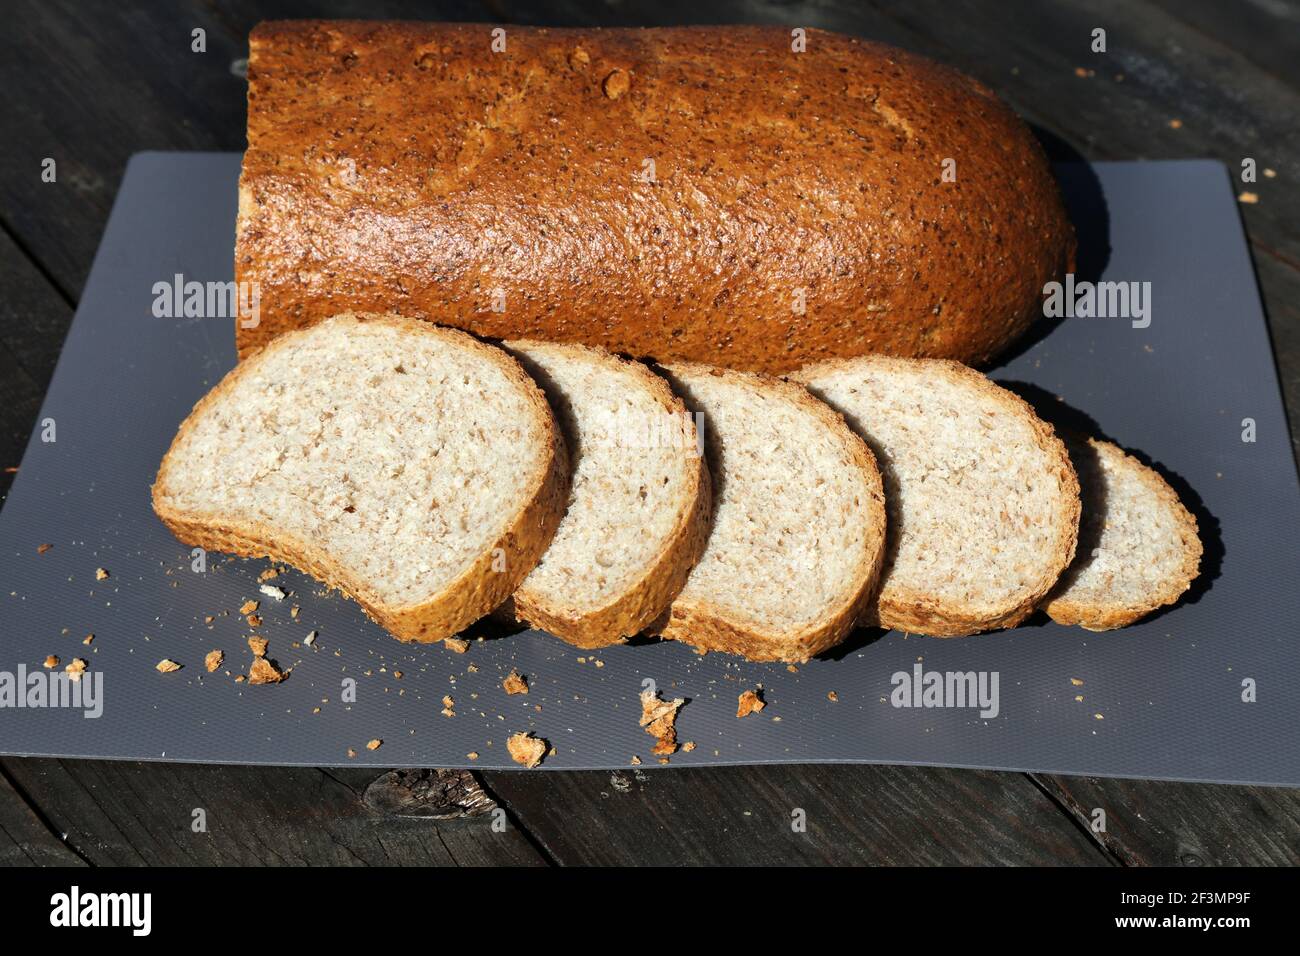 Kneippbrot in Norwegen (norwegische Sprache: Kneippbrod). Die beliebteste Art von Brot in Norwegen, hergestellt aus Vollkornmehl. Stockfoto